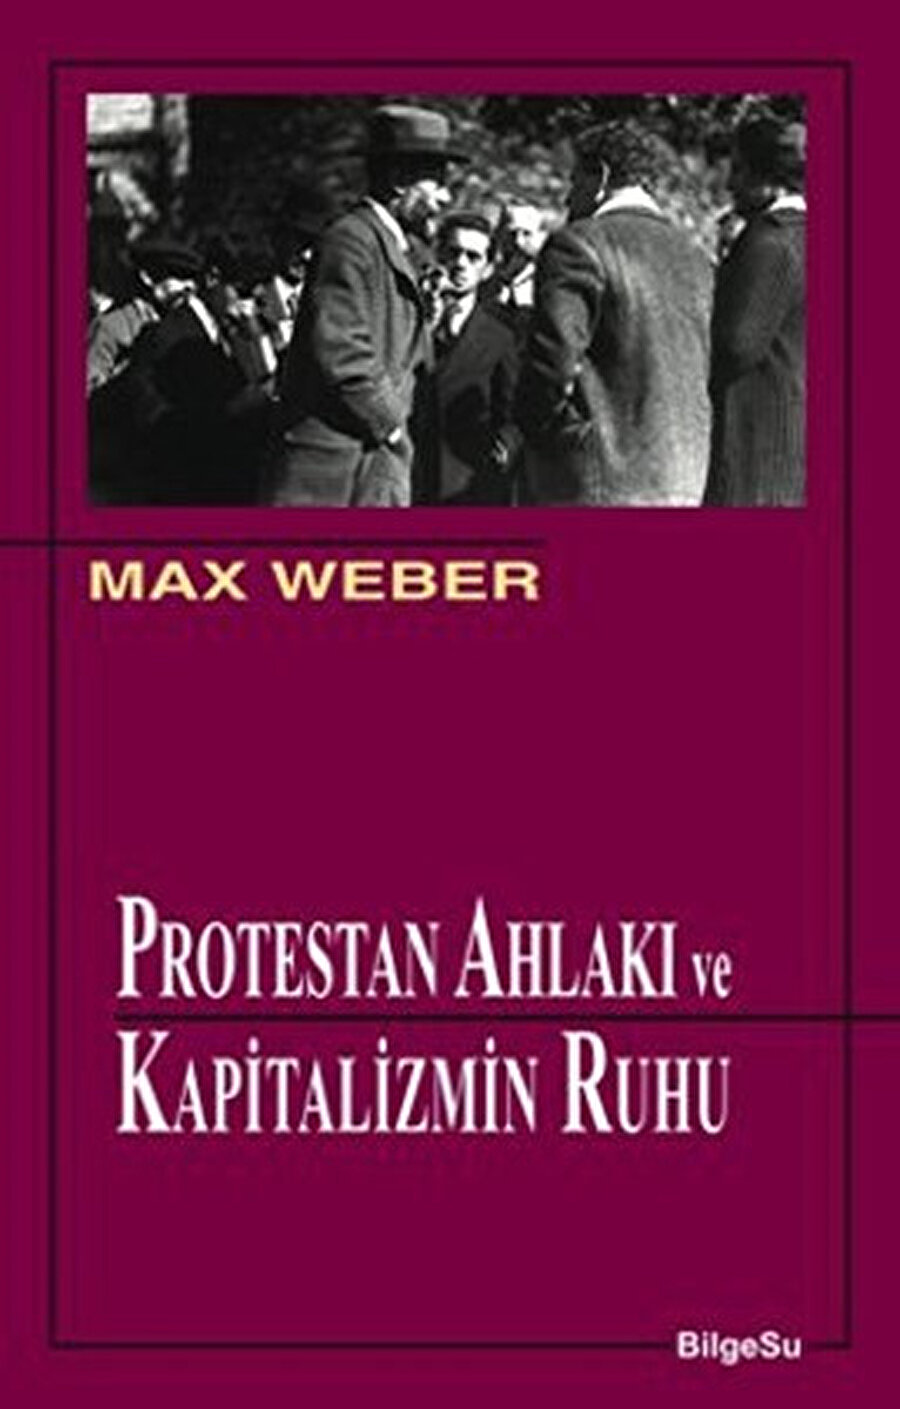 Weber’in klasikleşmiş yapıtı, modern çalışma ahlakını belirlemiş olan en önemli eserlerden biridir. Protestan ruhunu, kapitalizmin üzerinde yükseldiği bir temel olarak nitelendiren Weber’in çalışması, sanayi toplumundan bugüne zaman yönetiminin anahtarlarını da sunuyor.